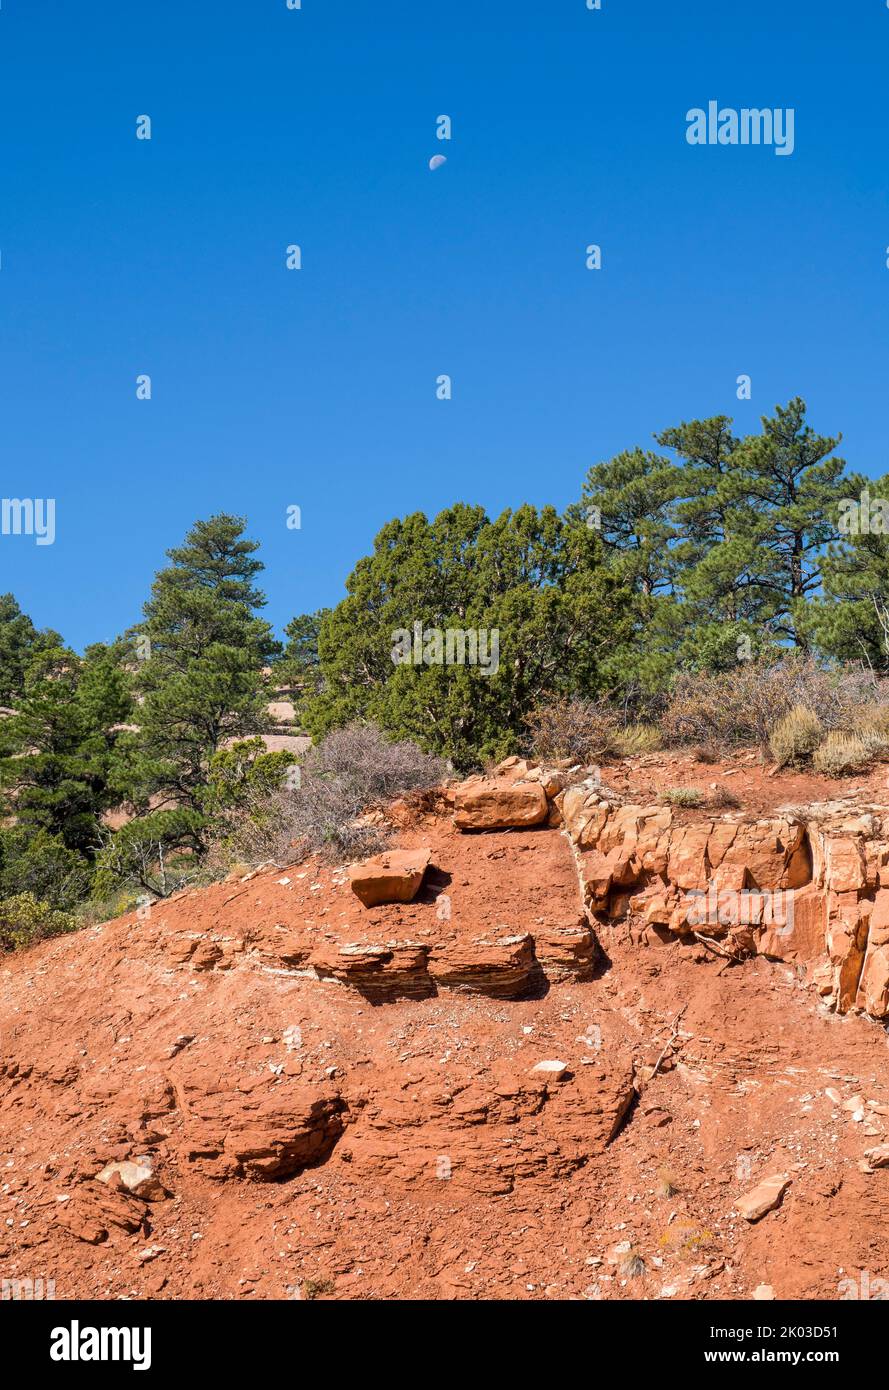 El Parque Nacional Zion está ubicado en el suroeste de Utah en la frontera con Arizona. Tiene una superficie de 579 kö² y se encuentra entre 1128 m y 2660 m de altitud. Roca y bosque en la ruta La Verkin Creek Trail. Foto de stock